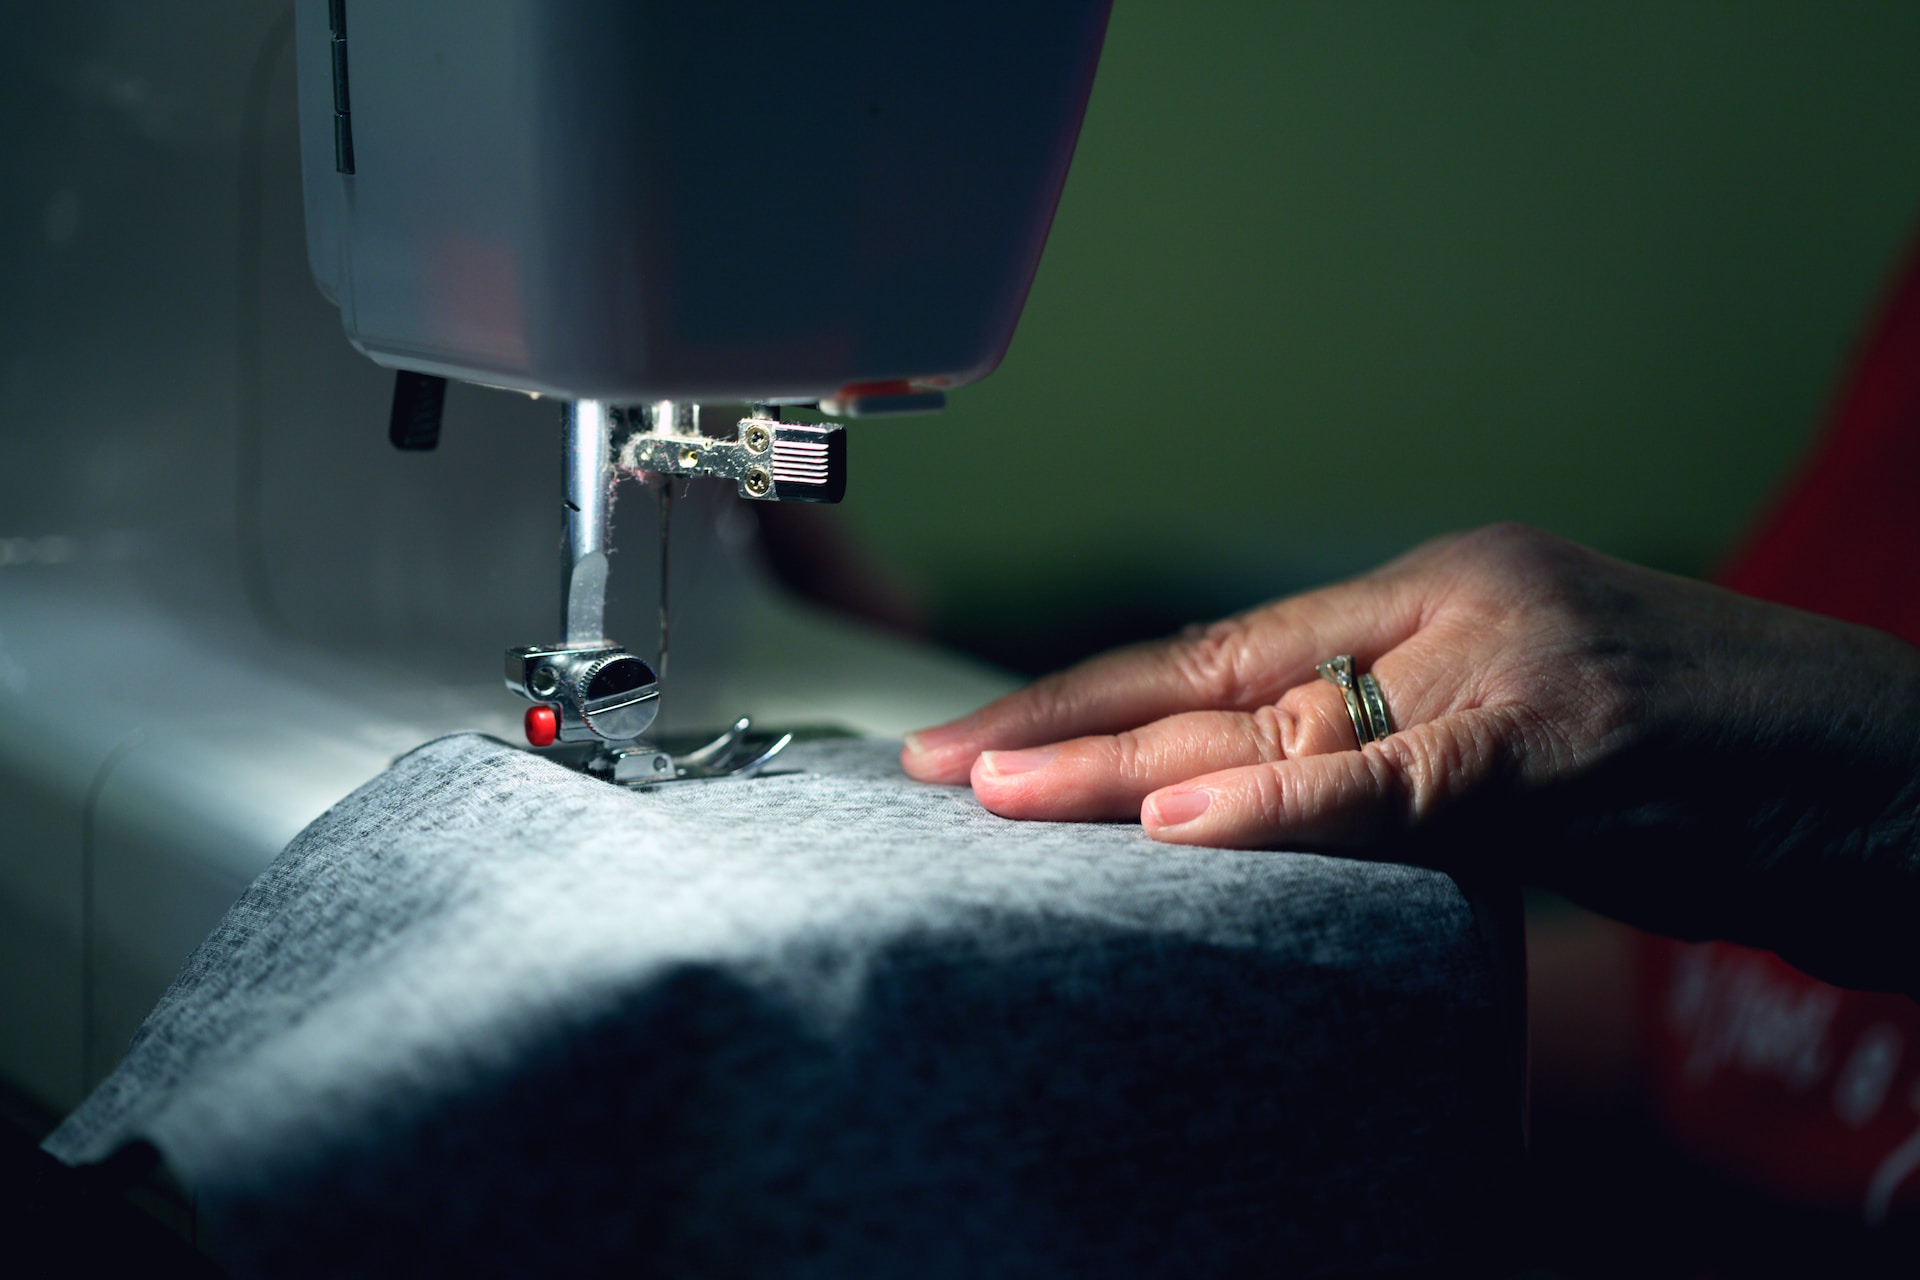 women sewing fabric